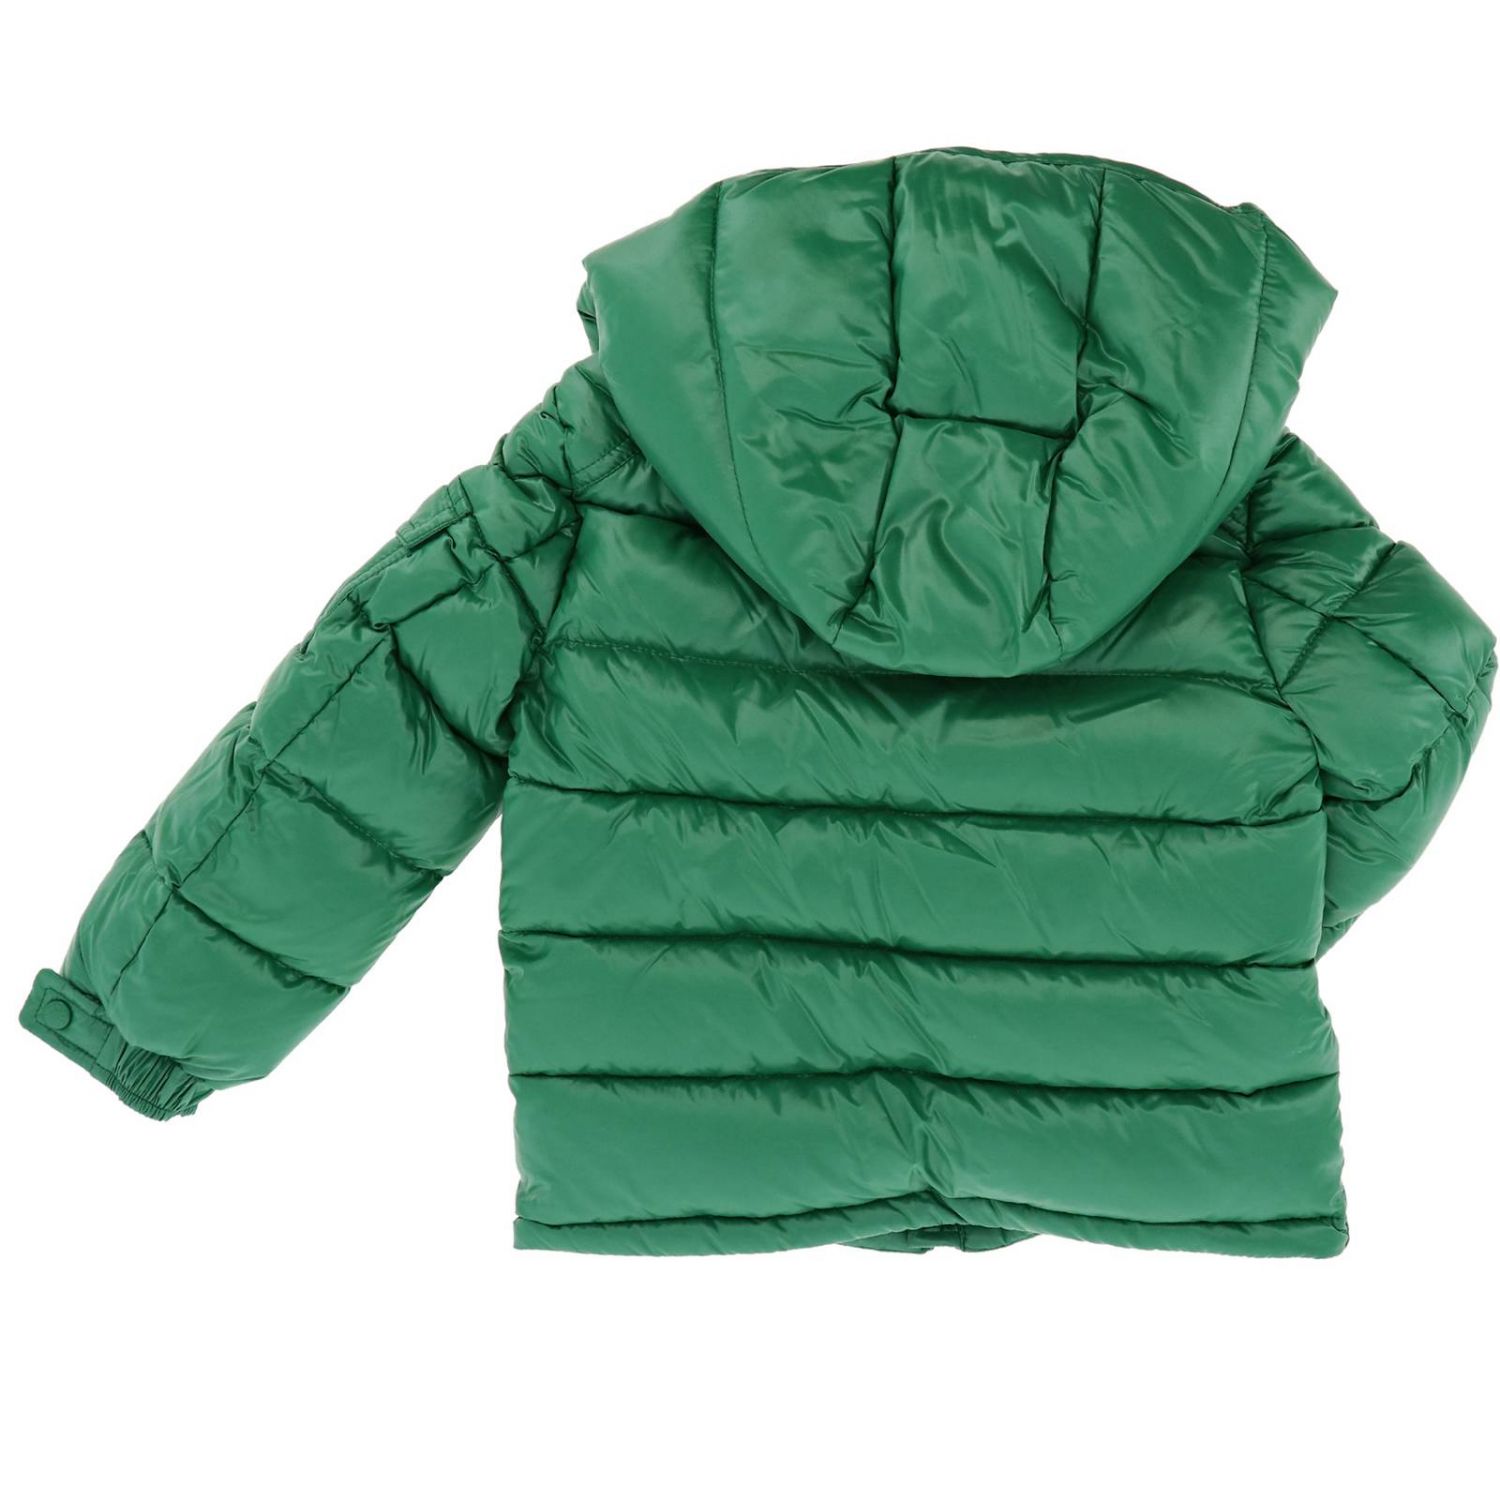 MONCLER: jacket for boys - Green | Moncler jacket 41852 68950 online on ...